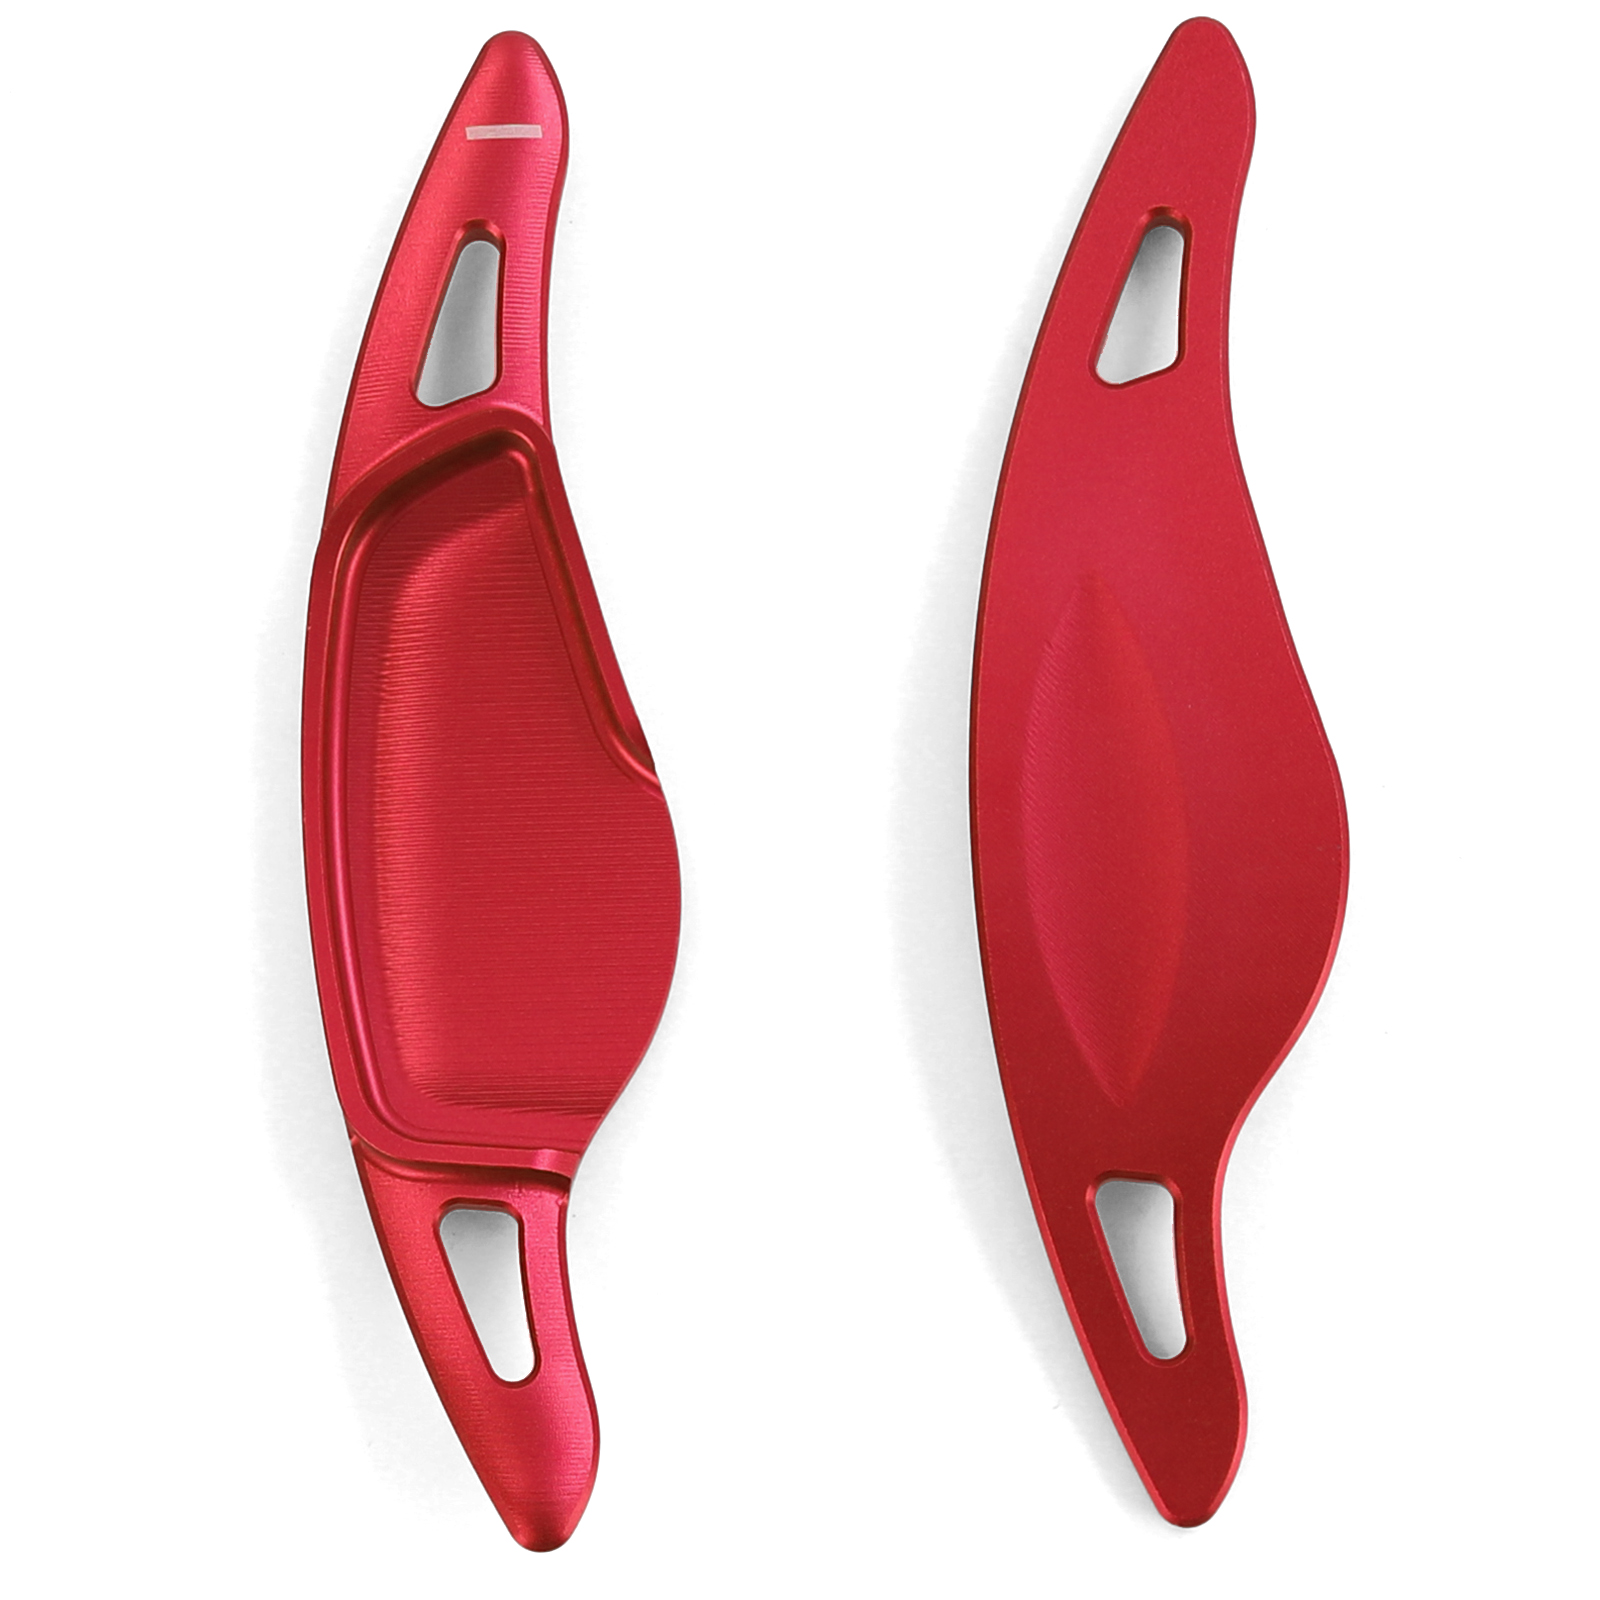 Paddle Shifters - Aluminium Schaltwippen - Rot glänzend, Rot glänzend